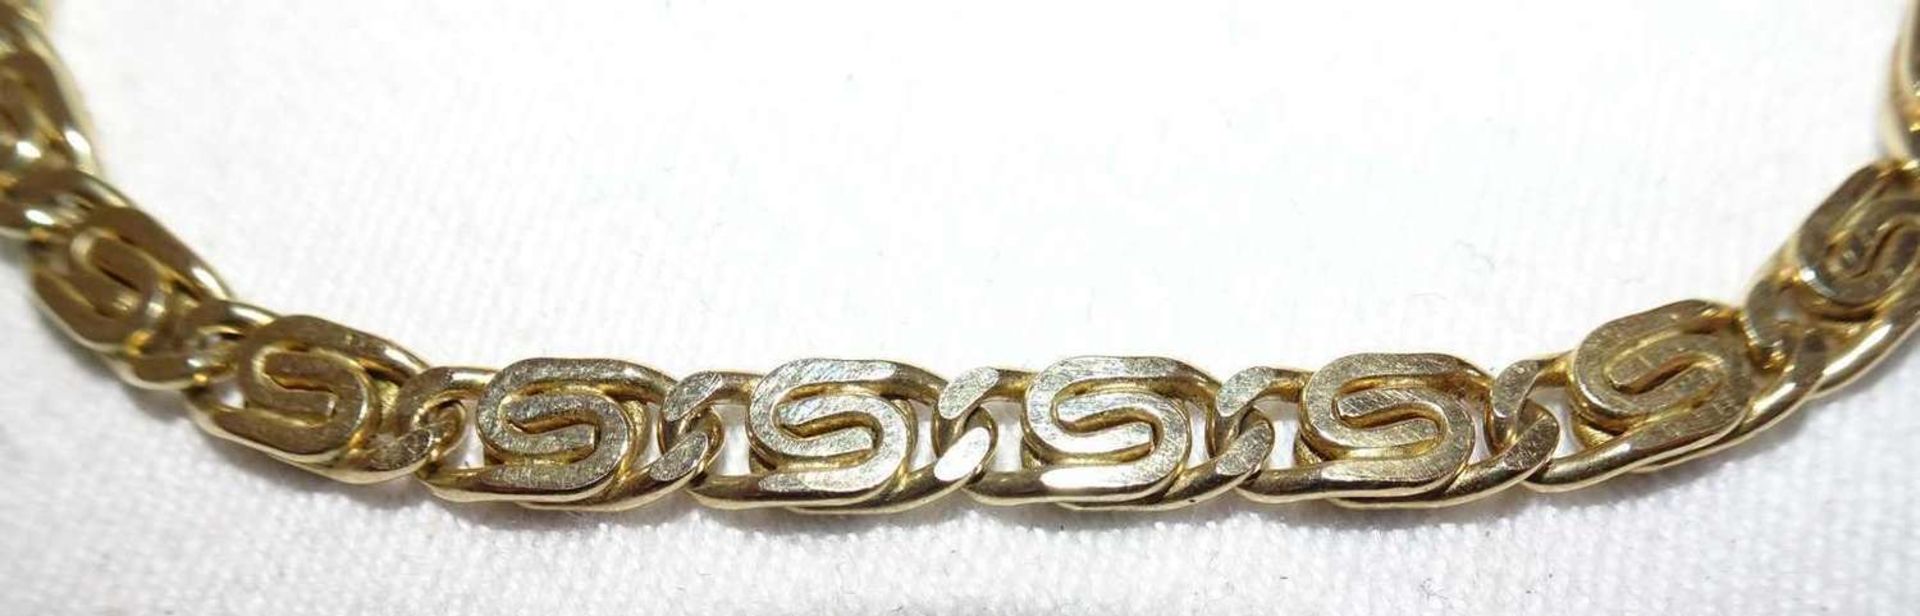 Armband, 925er Silber vergoldet. Länge ca. 19 cmBracelet, 925 silver gilt. Length approx. 19 cm - Image 2 of 2